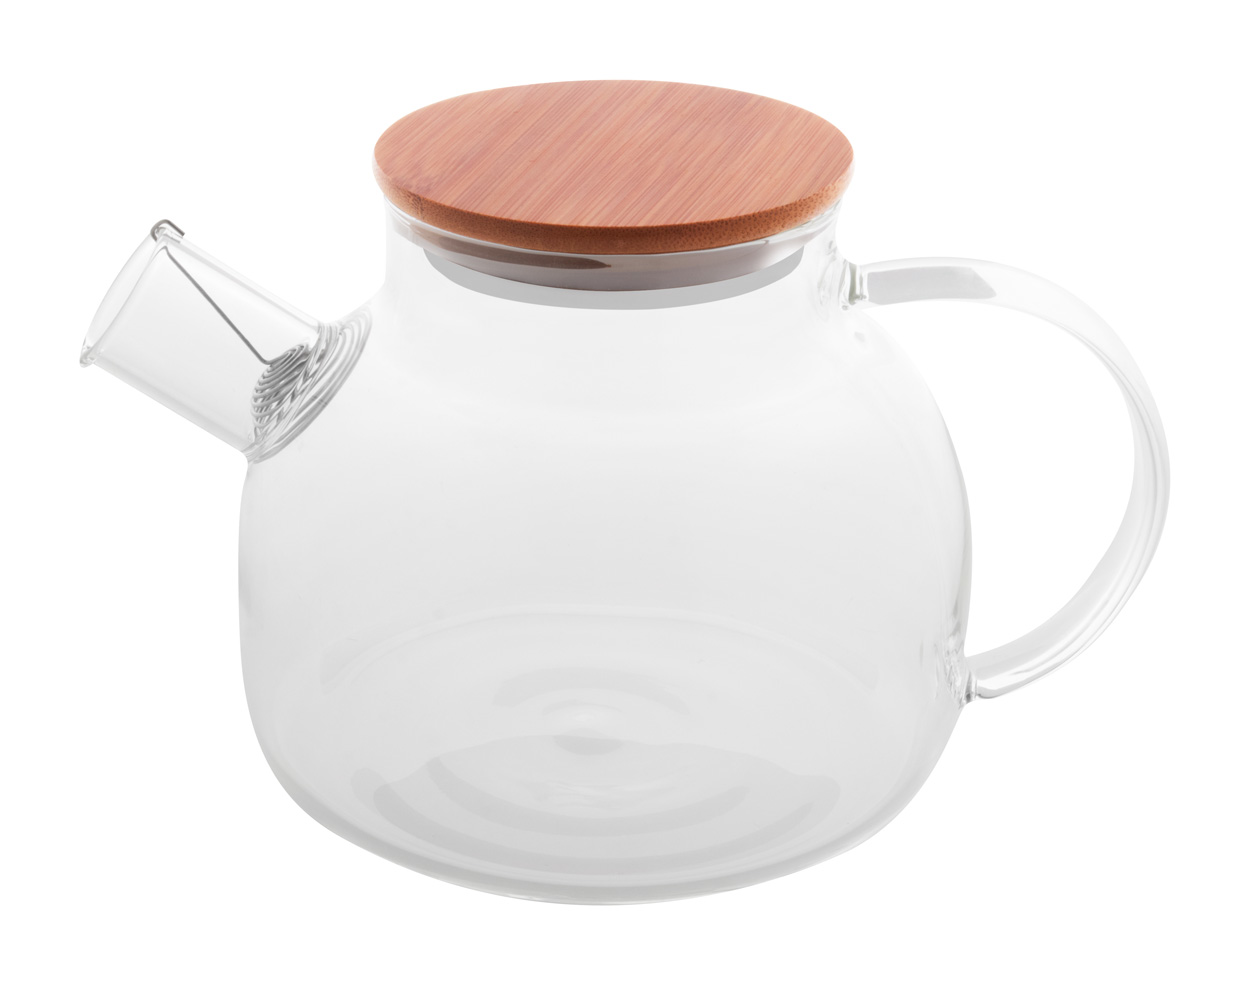 Tendina glass teapot